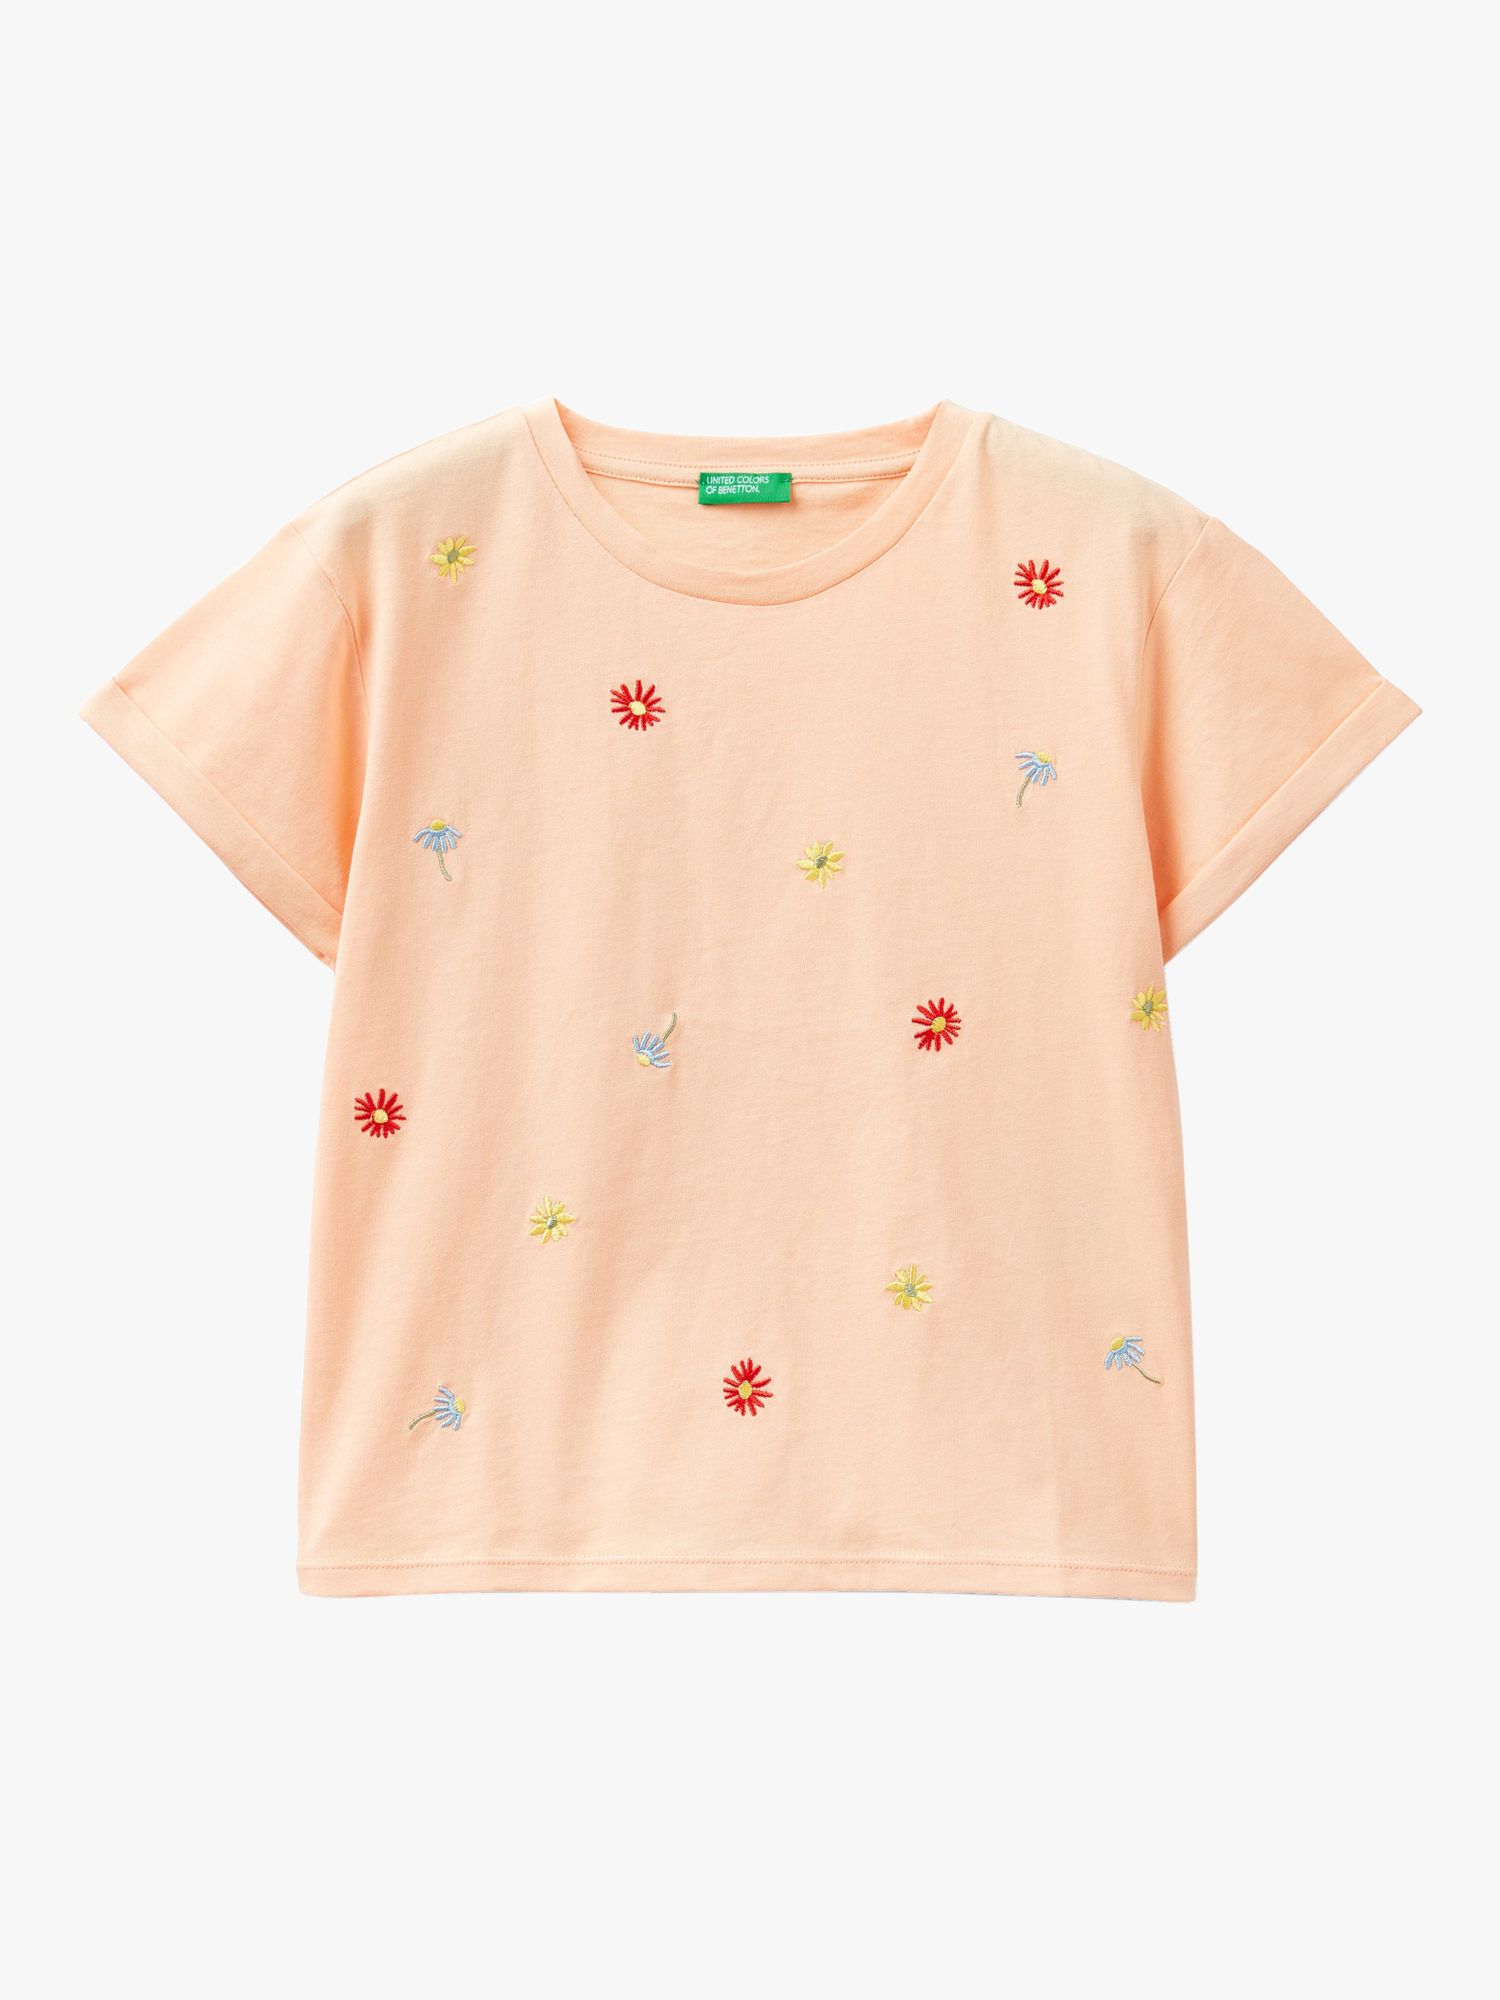 Benetton Kids' Cotton Floral Embroidered T-Shirt, Dark Powder, 6-7 years